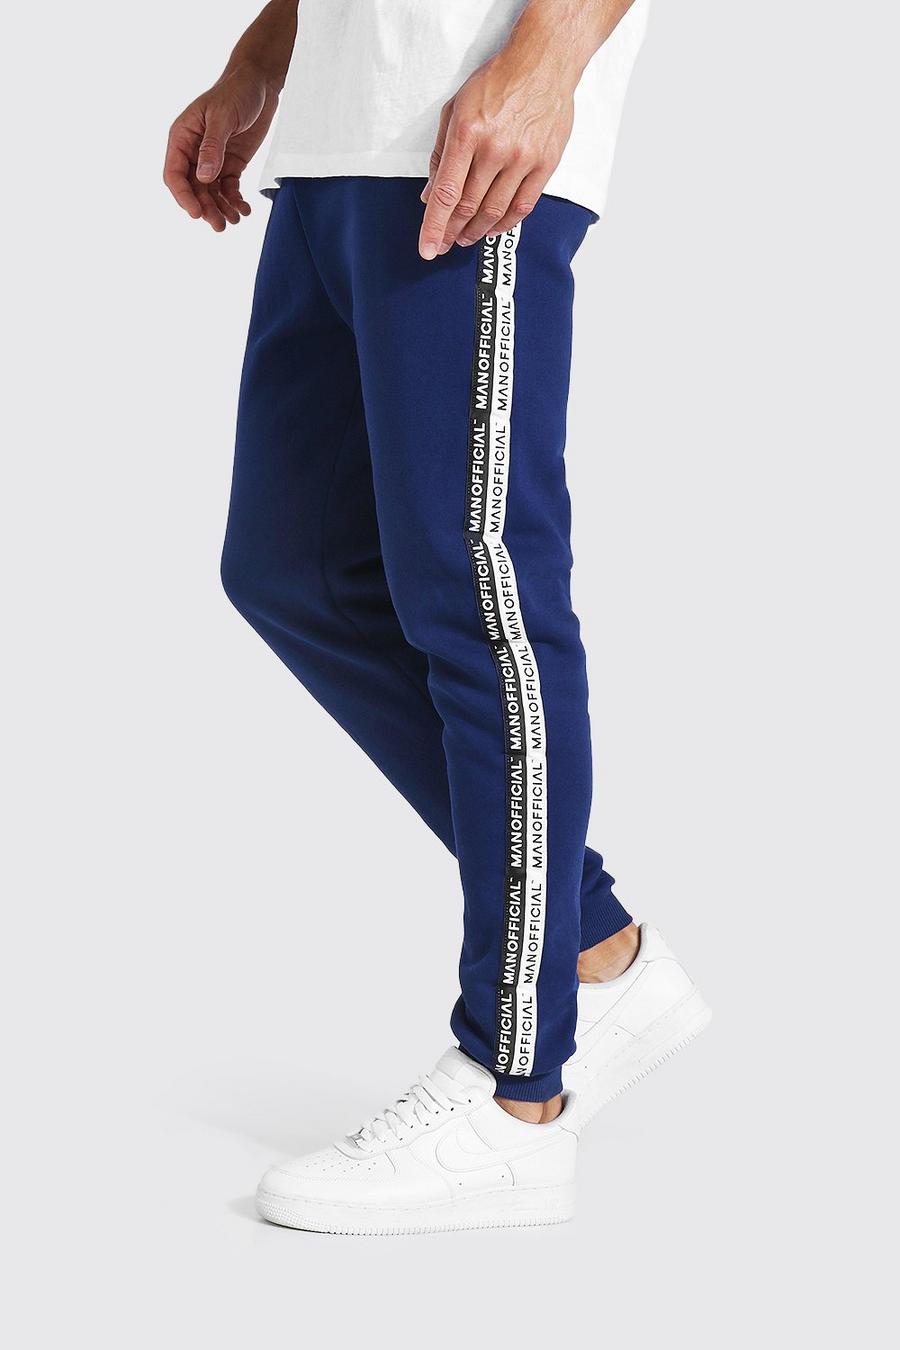 Pantaloni tuta Tall skinny con fascia con scritta Man Official, Blu oltremare image number 1